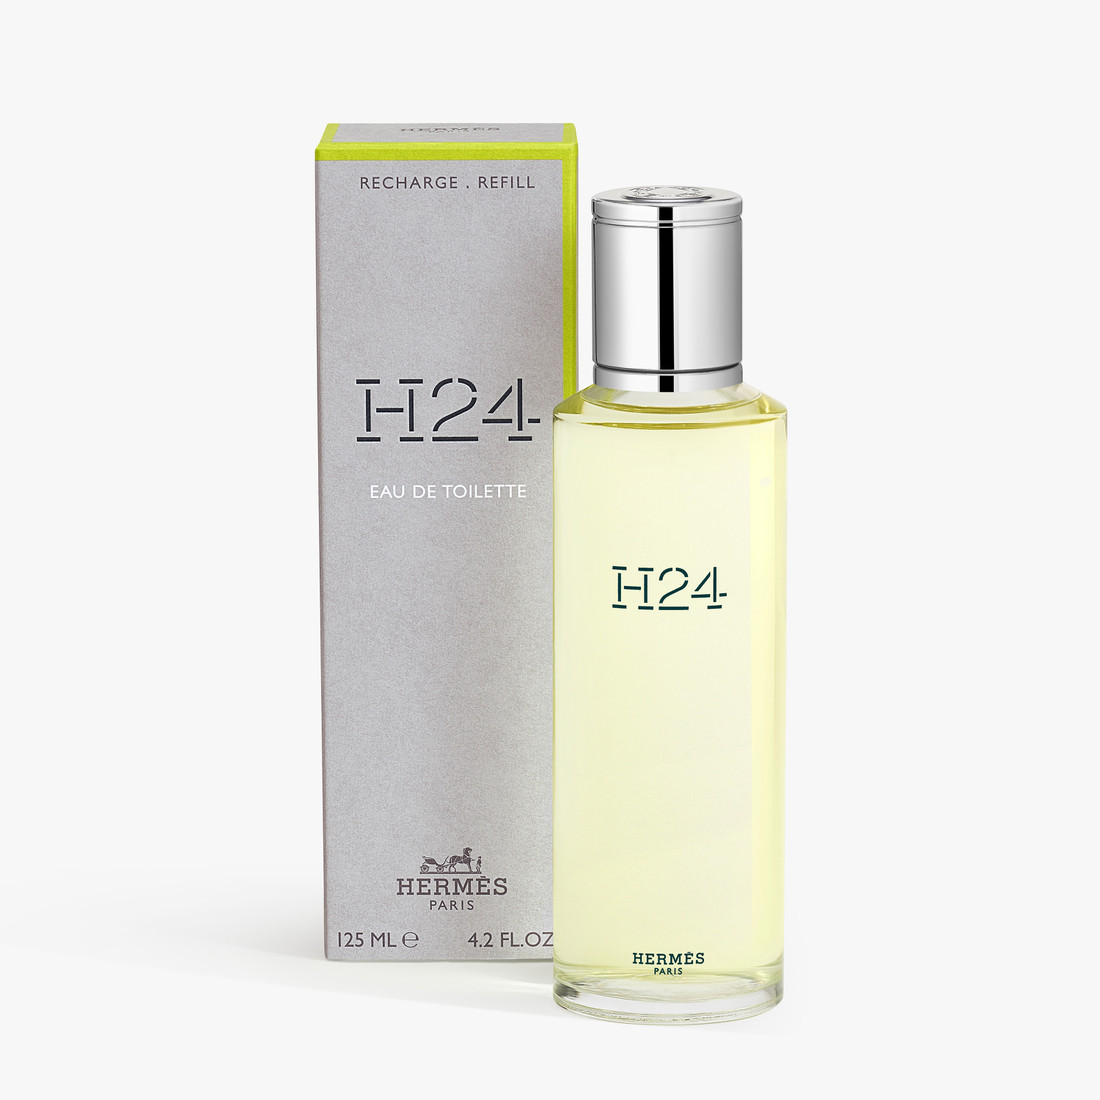 Image of Hermes H24 Recharge Refill - Eau de Toilette 125 ml